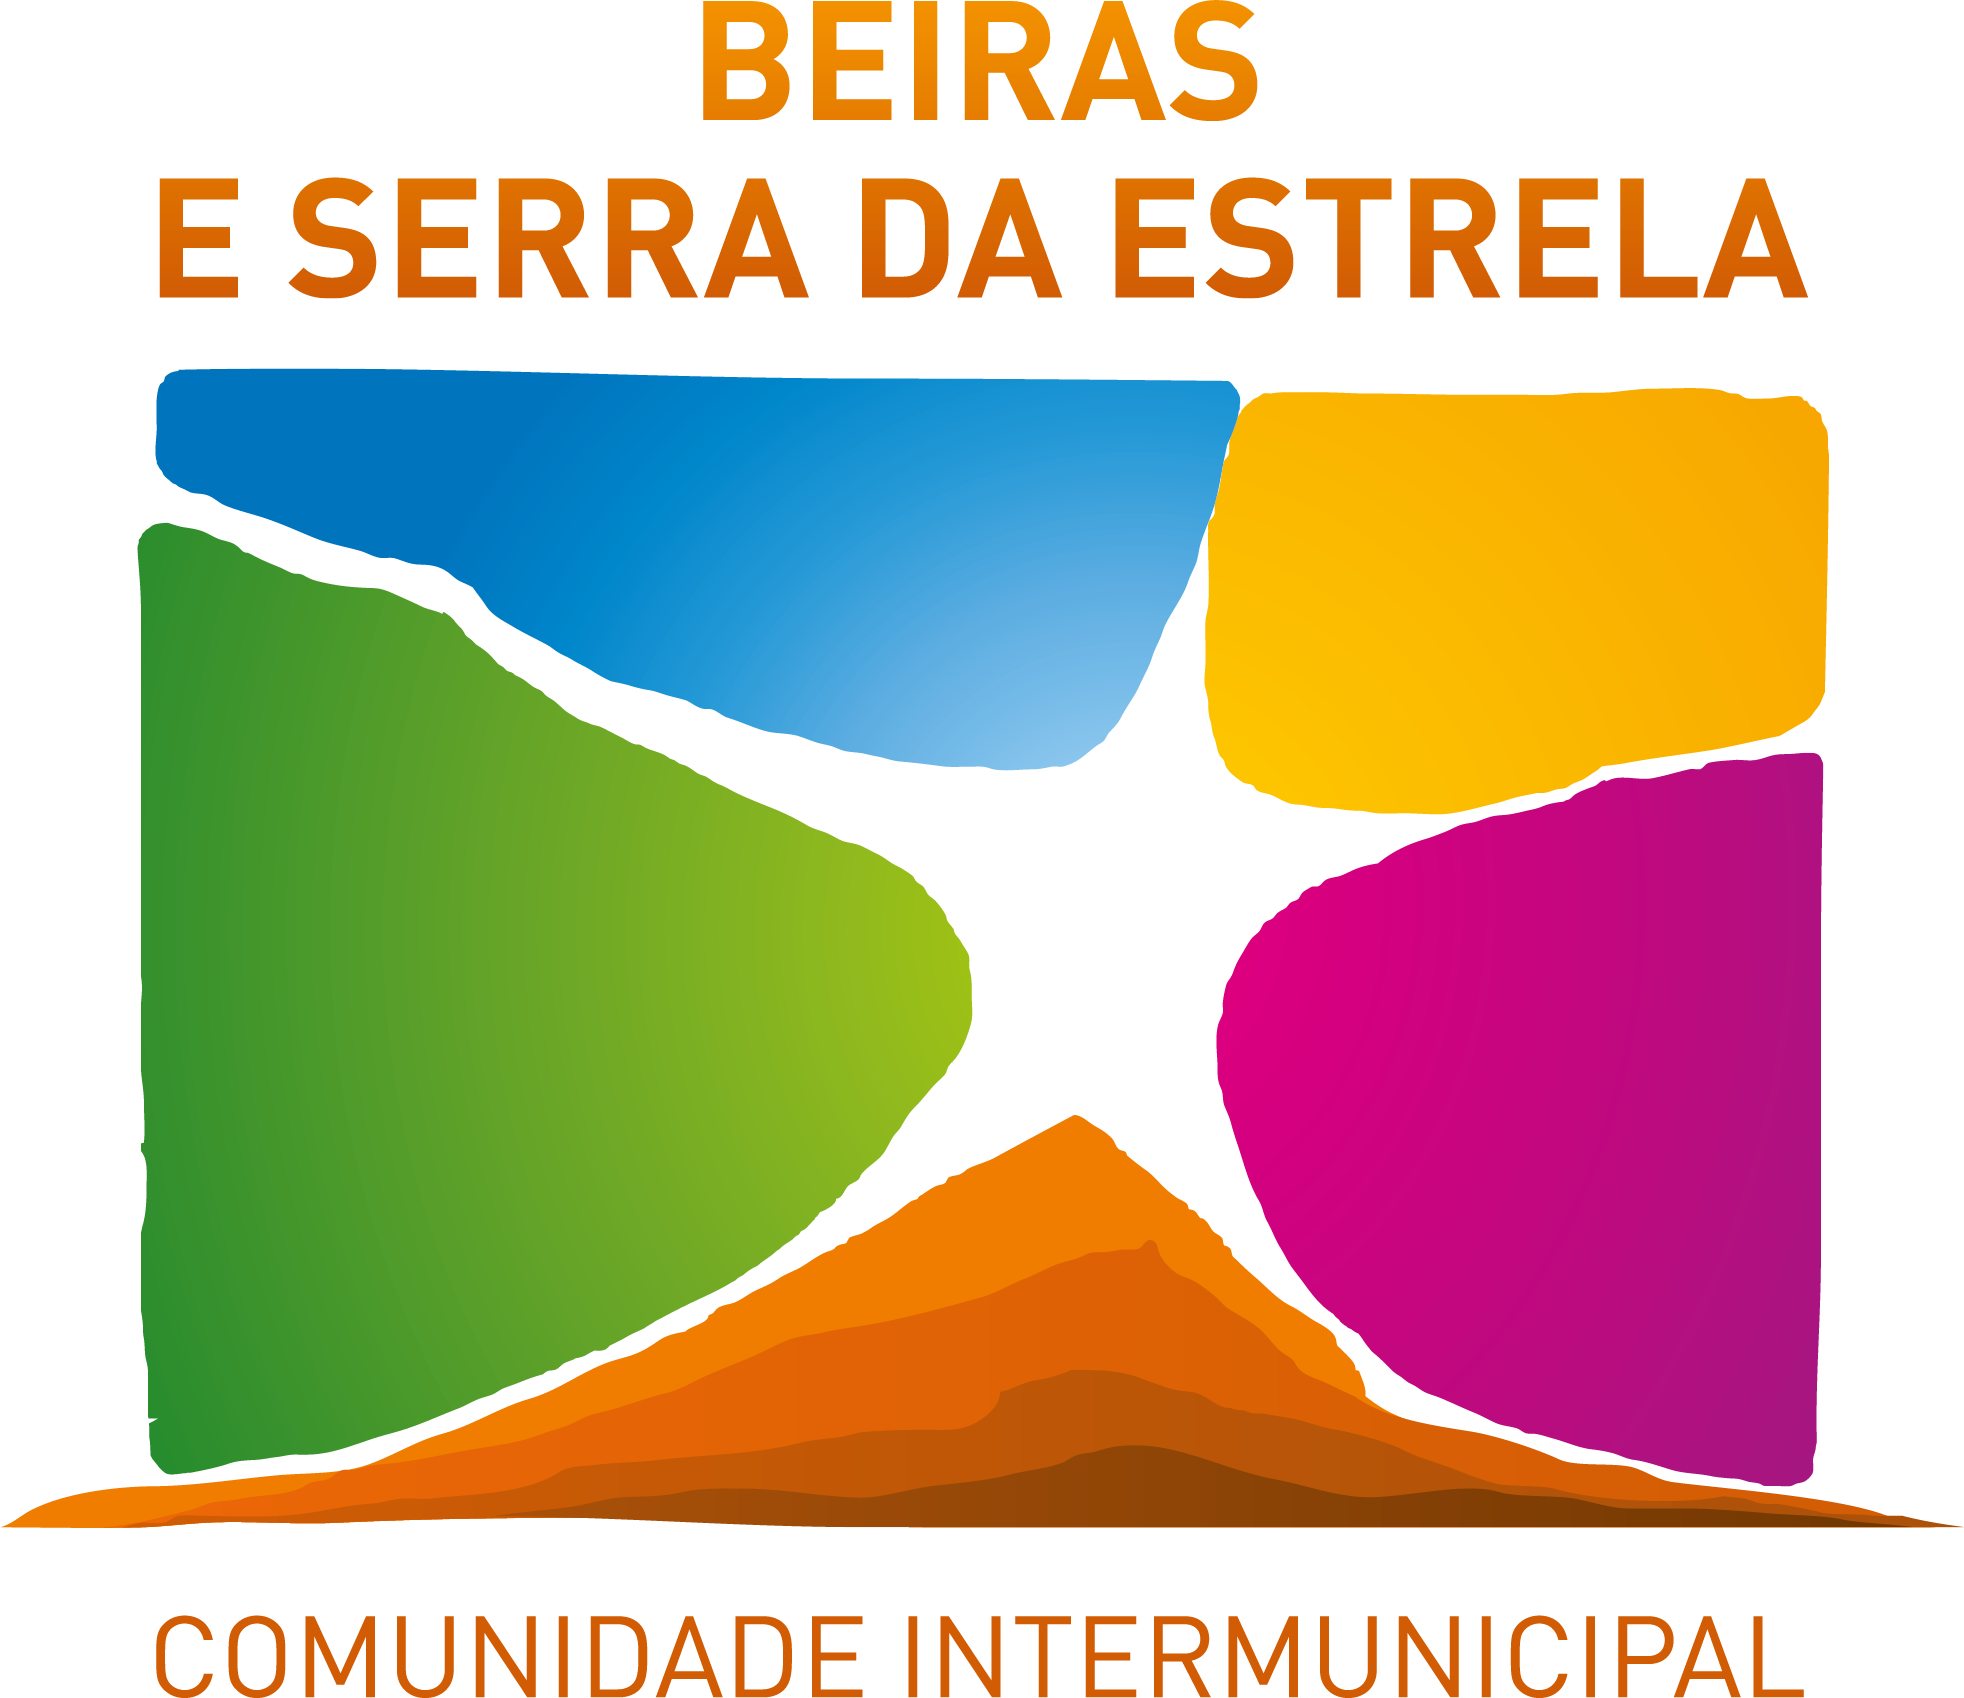 Beiras e Serra da Estrela, Comunidade Internacional